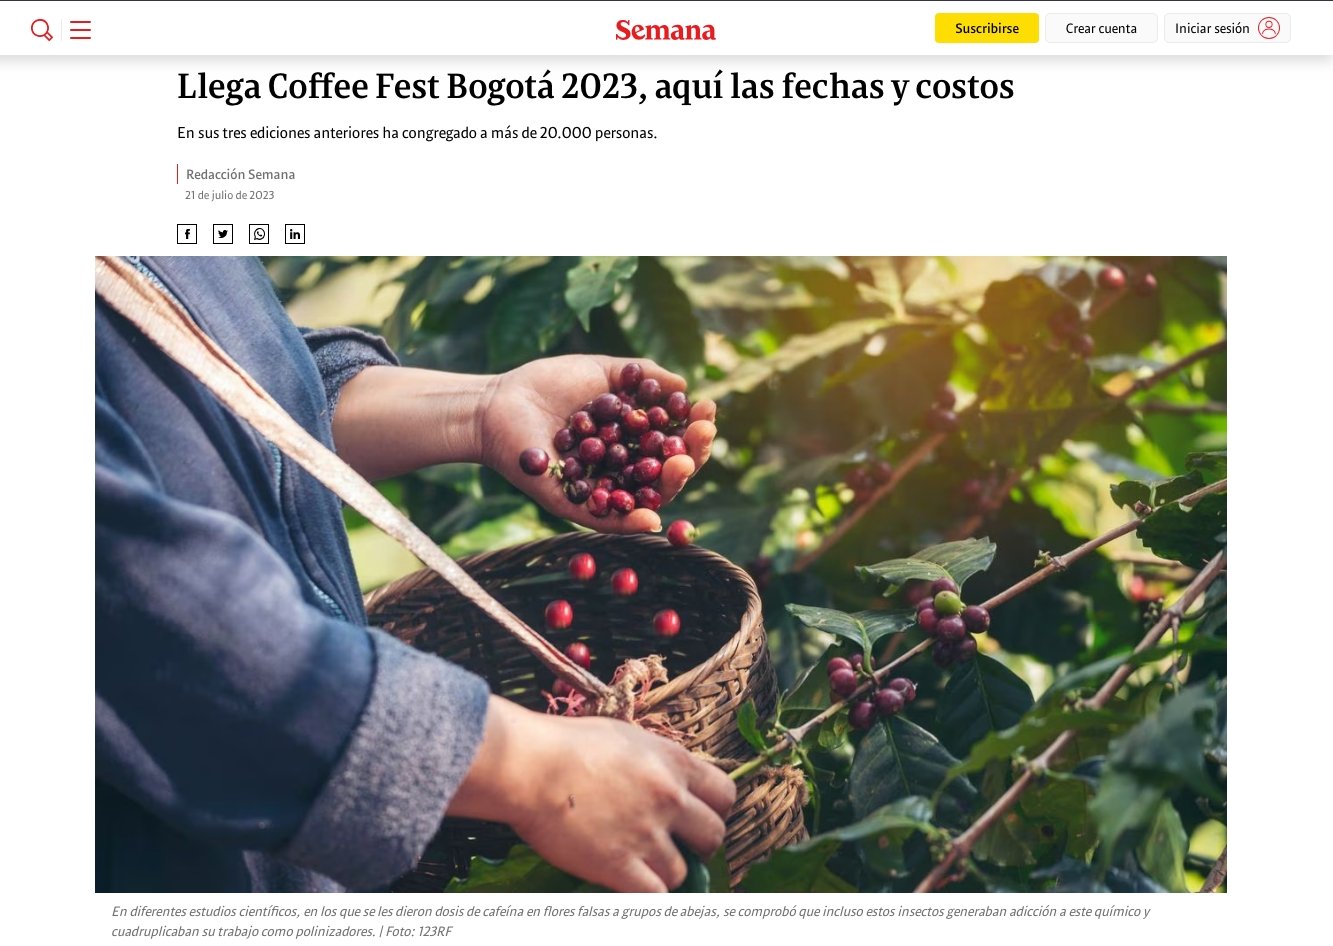 Semana: Llega Coffee Fest Bogotá 2023, aquí las fechas y costos